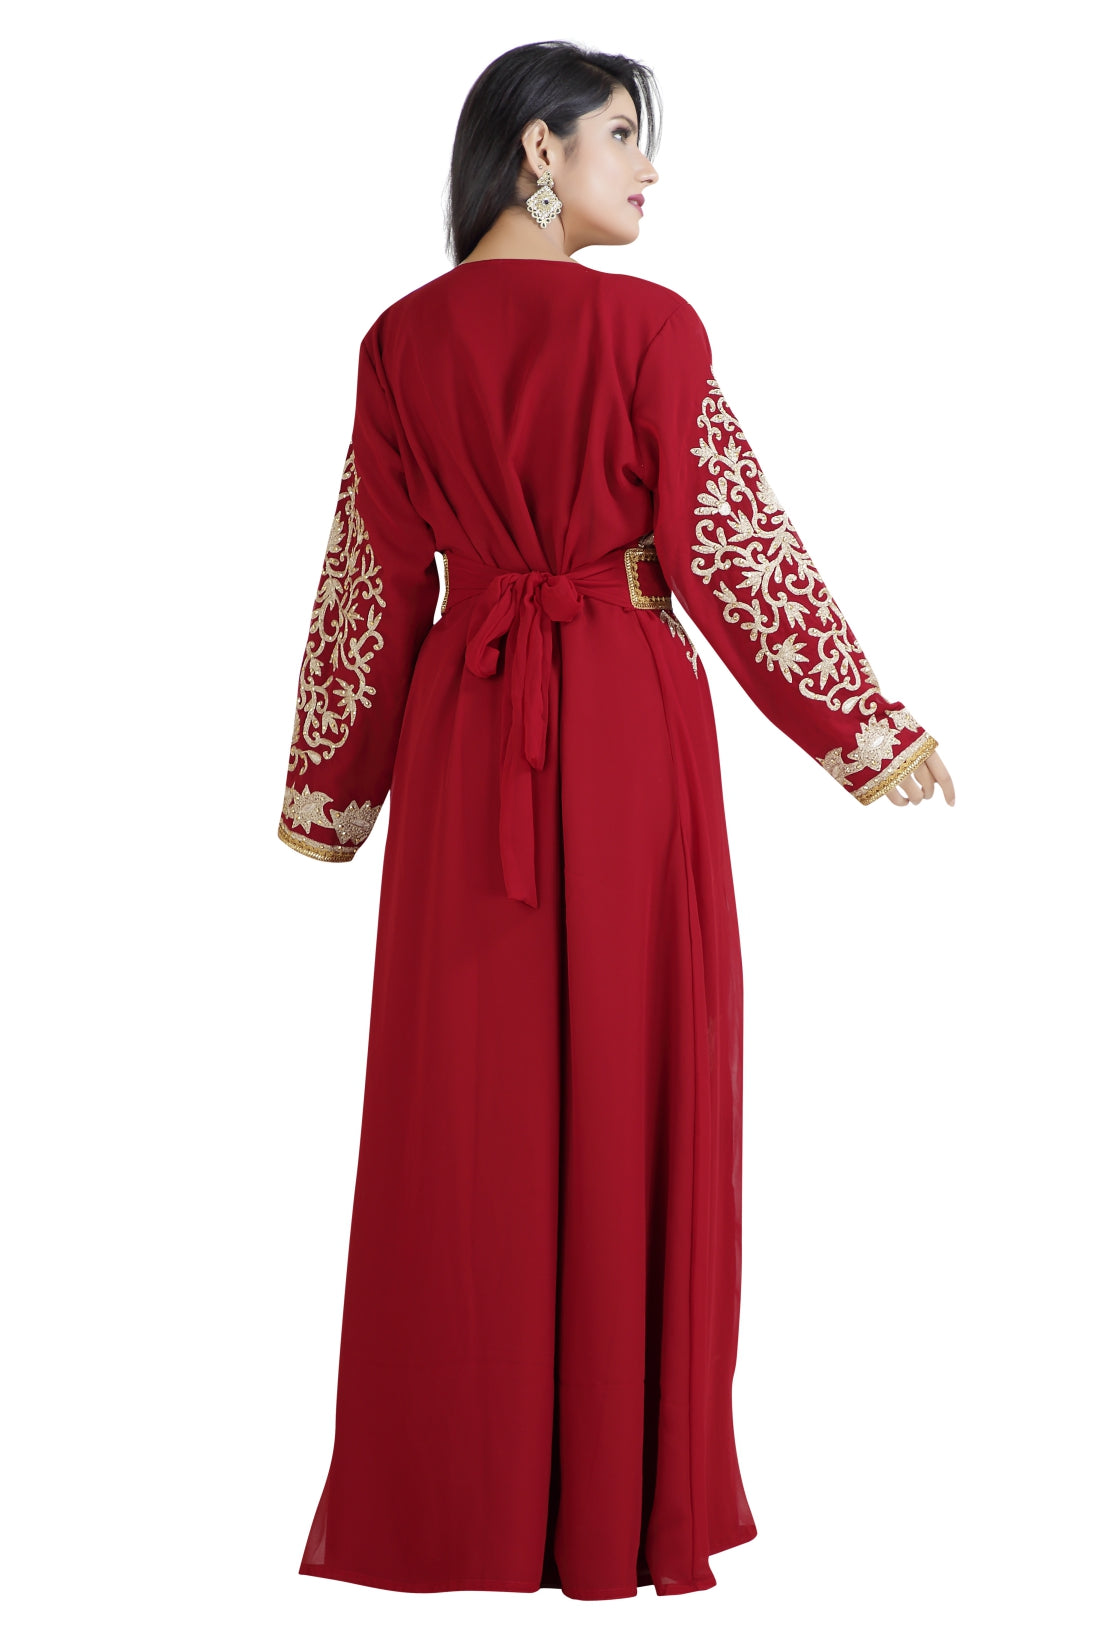 Arabian Dress Bridal Takchita Gown - Maxim Creation